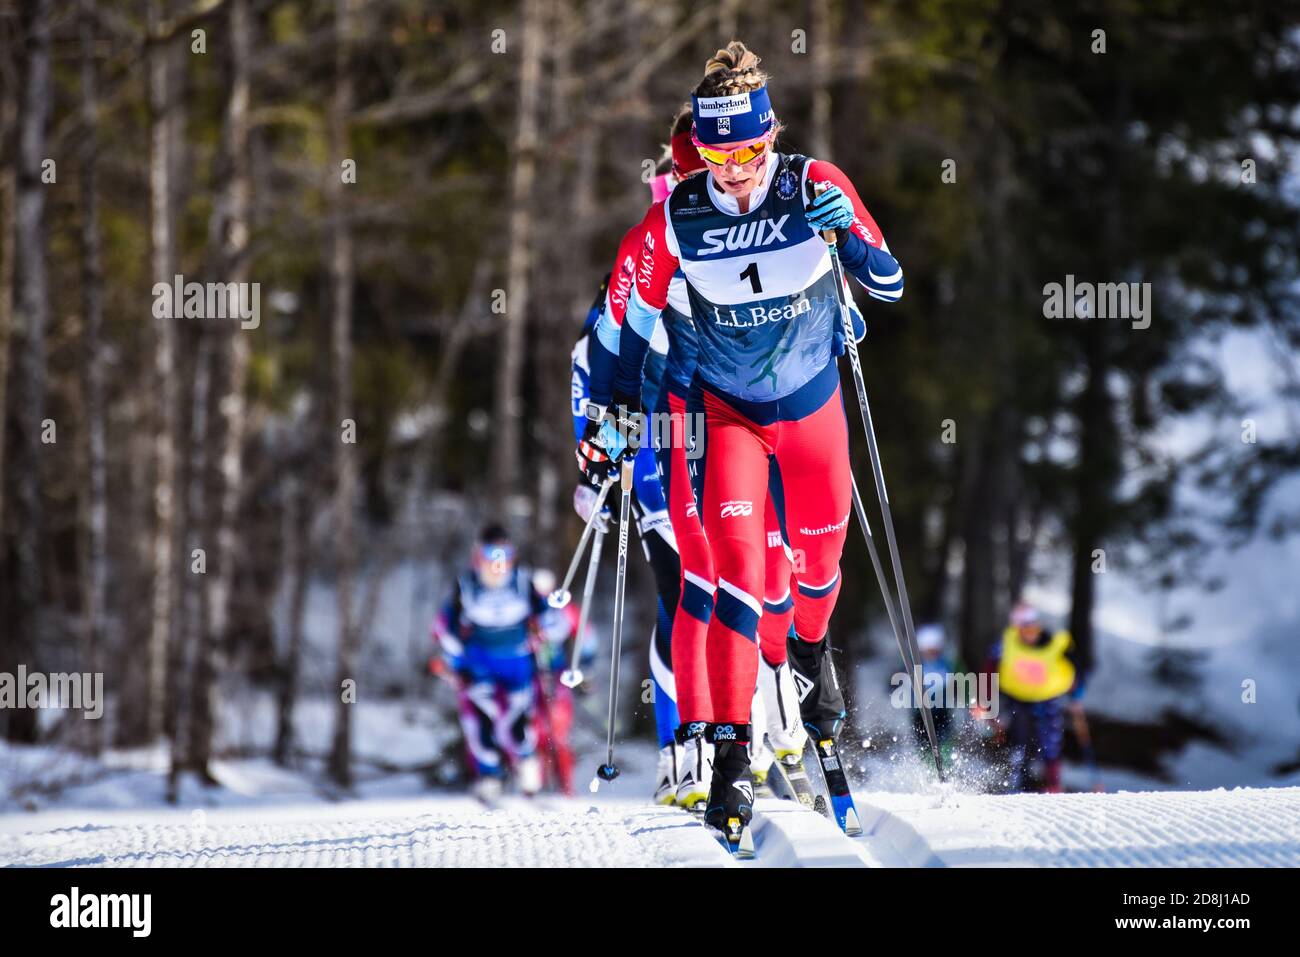 Jessie Diggins, miembro DEL equipo DE esquí DE EE.UU., lidera la carrera clásica de 30 kilómetros en las finales de Super Tour 2018, Craftsbury, Vermont, EE.UU Foto de stock